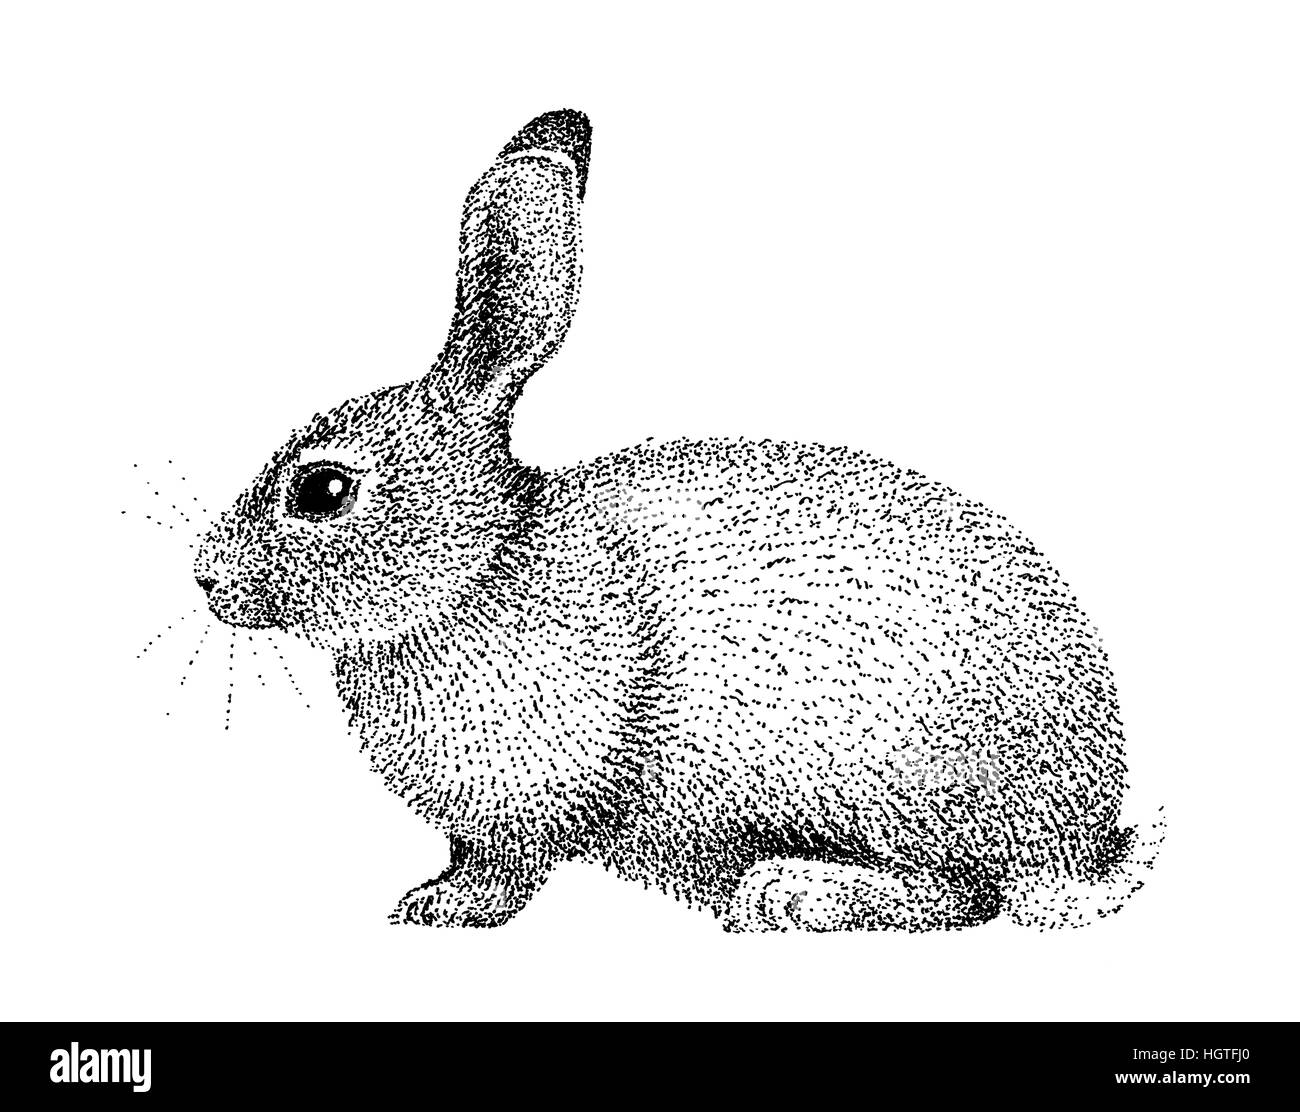 Illustrazione di coniglio vecchio stile di litografia disegnata a mano Foto Stock